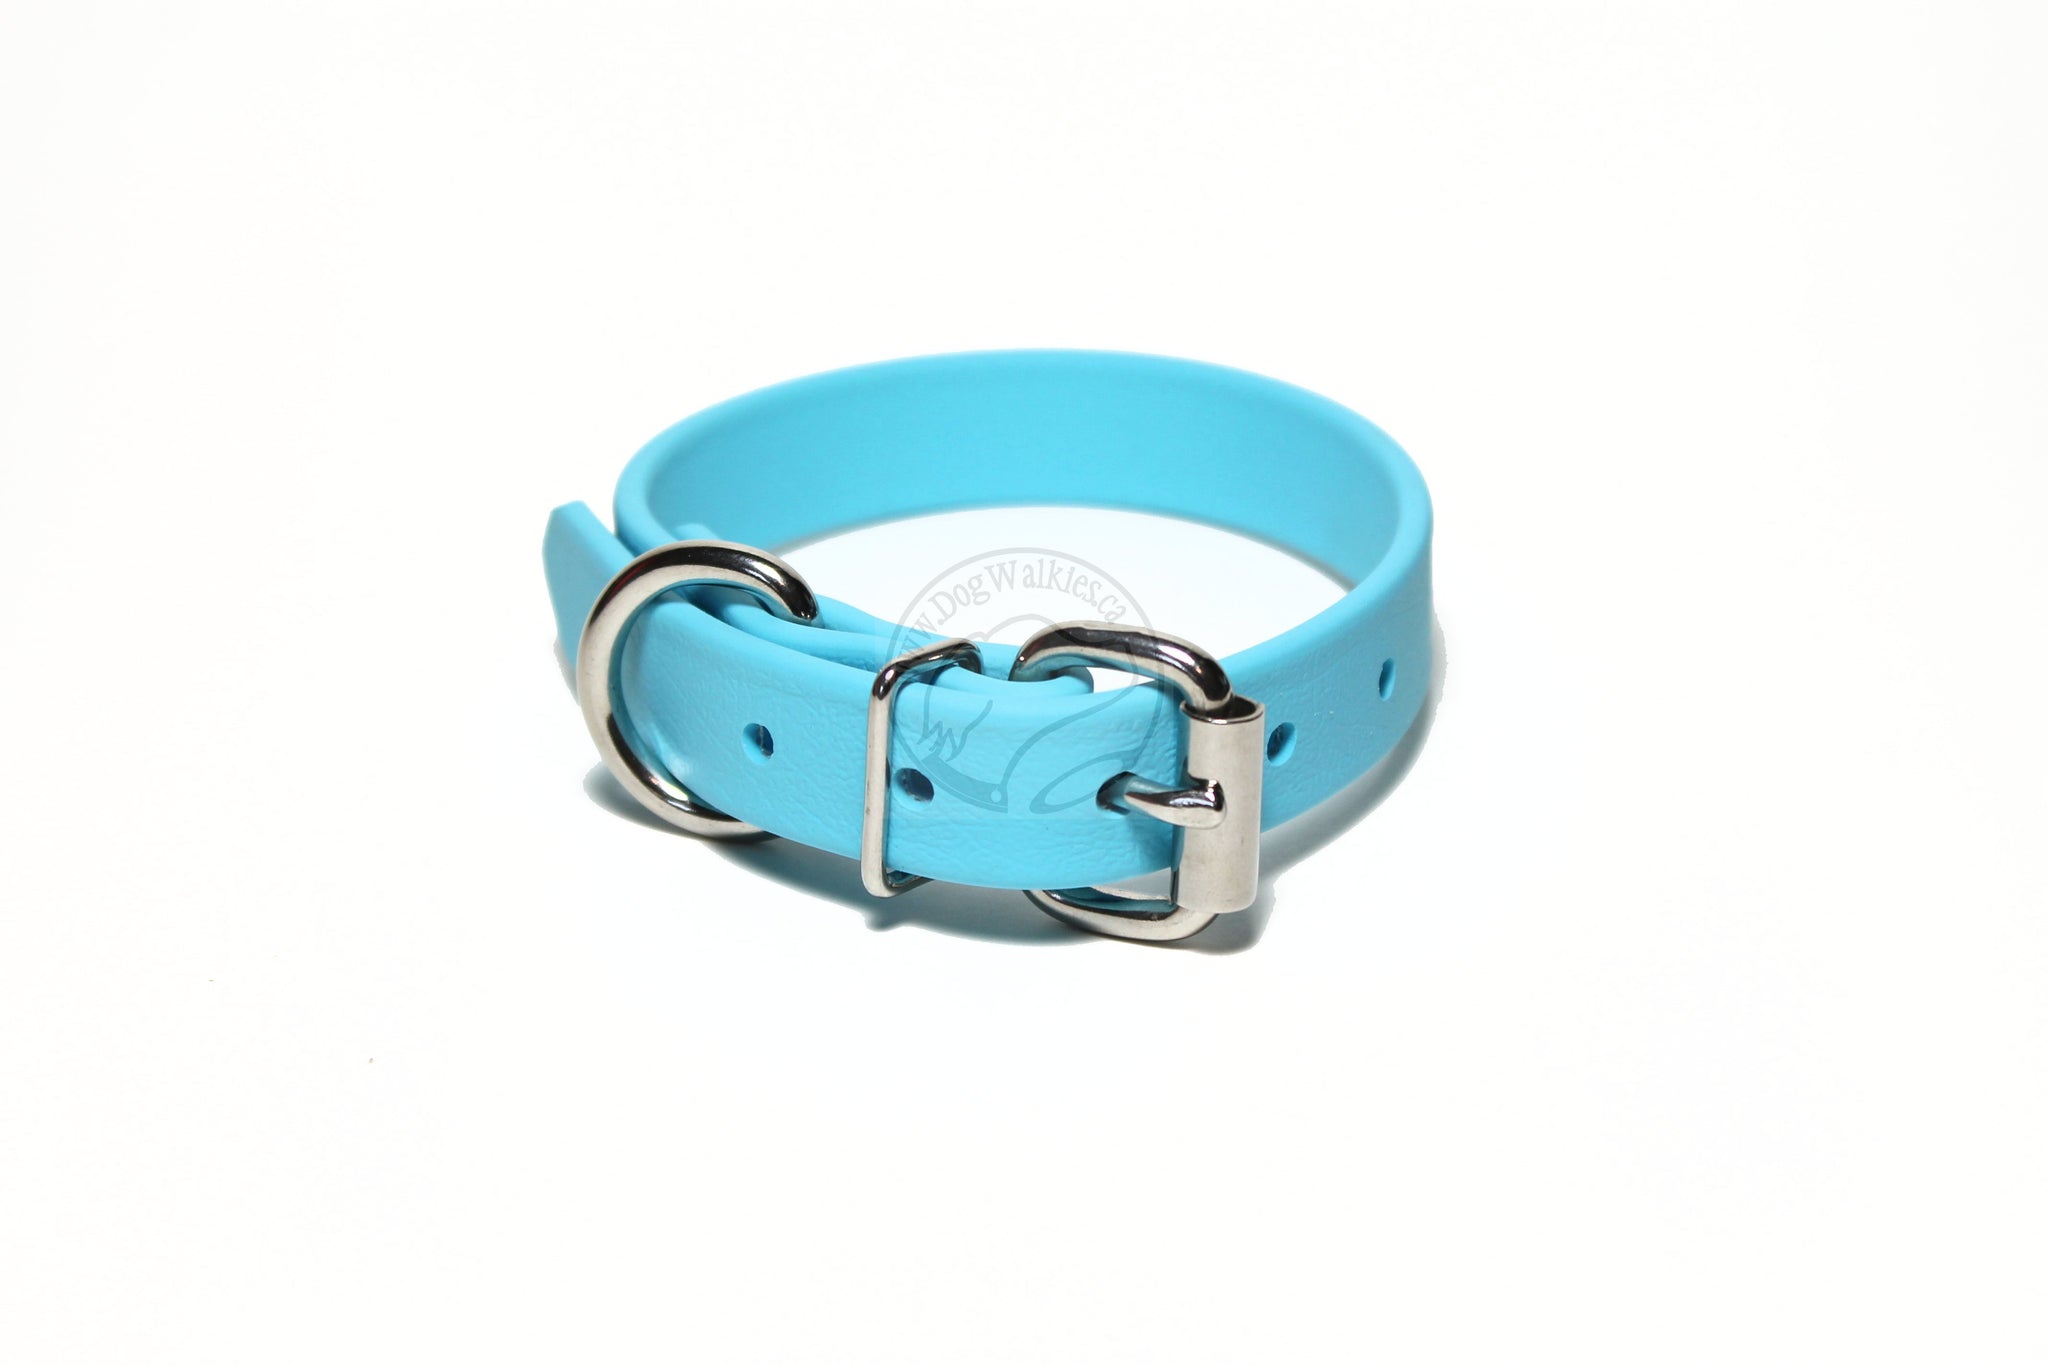 Frozen Blue Biothane Dog Collar - 3/4" (20mm) wide